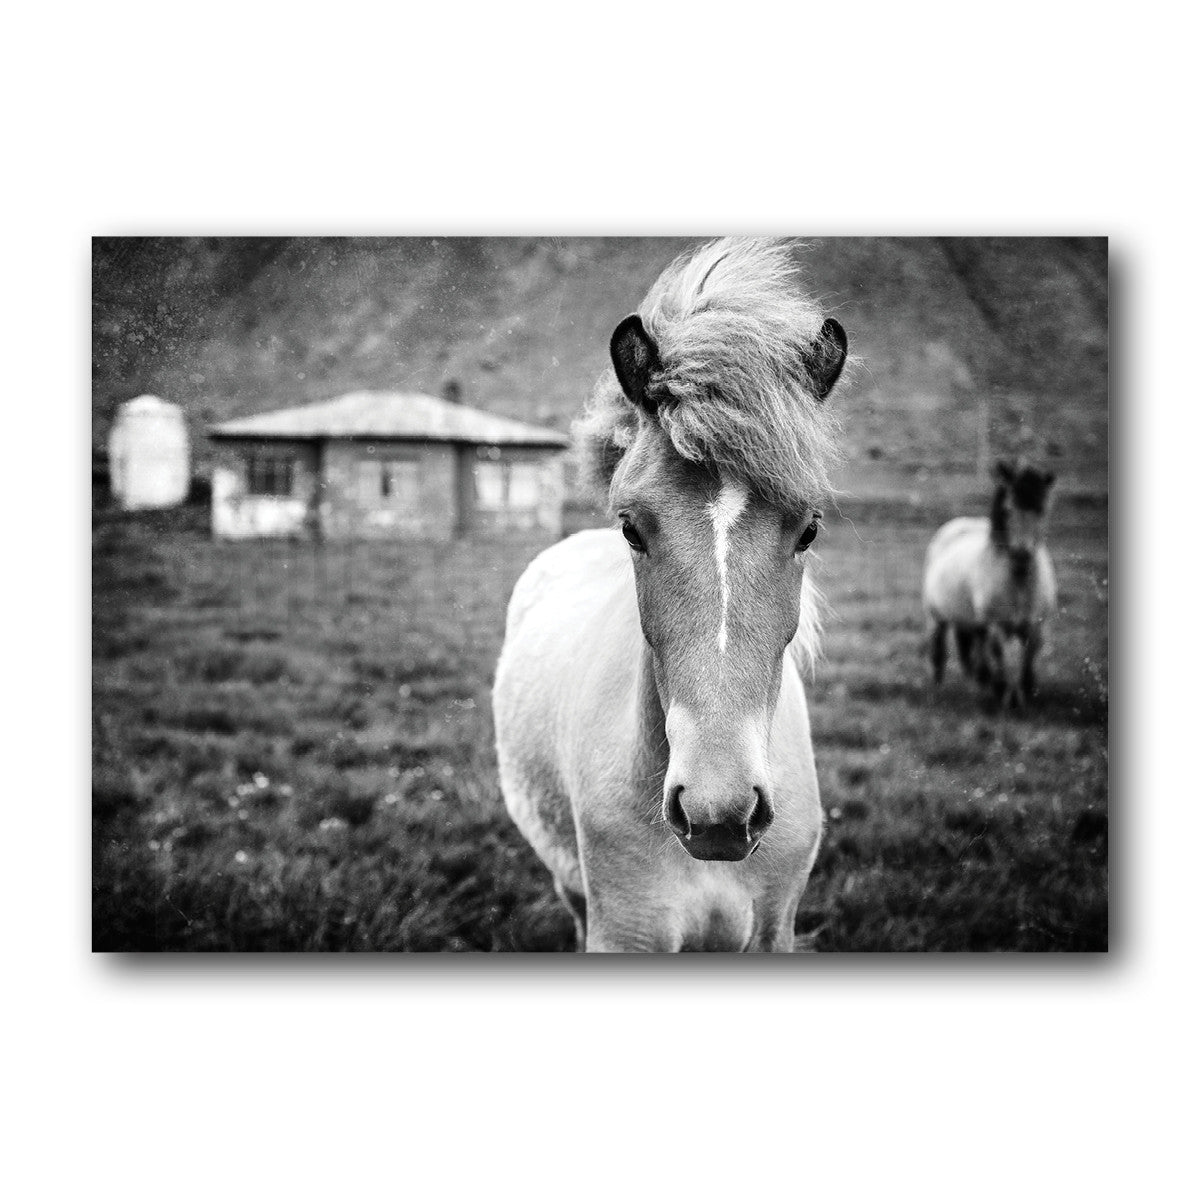 Colección Kuva<br> potro islandés<br> Cerca de Breiðdalsvík Islandia<br> Impresión en blanco y negro de archivo de lanzamiento limitado